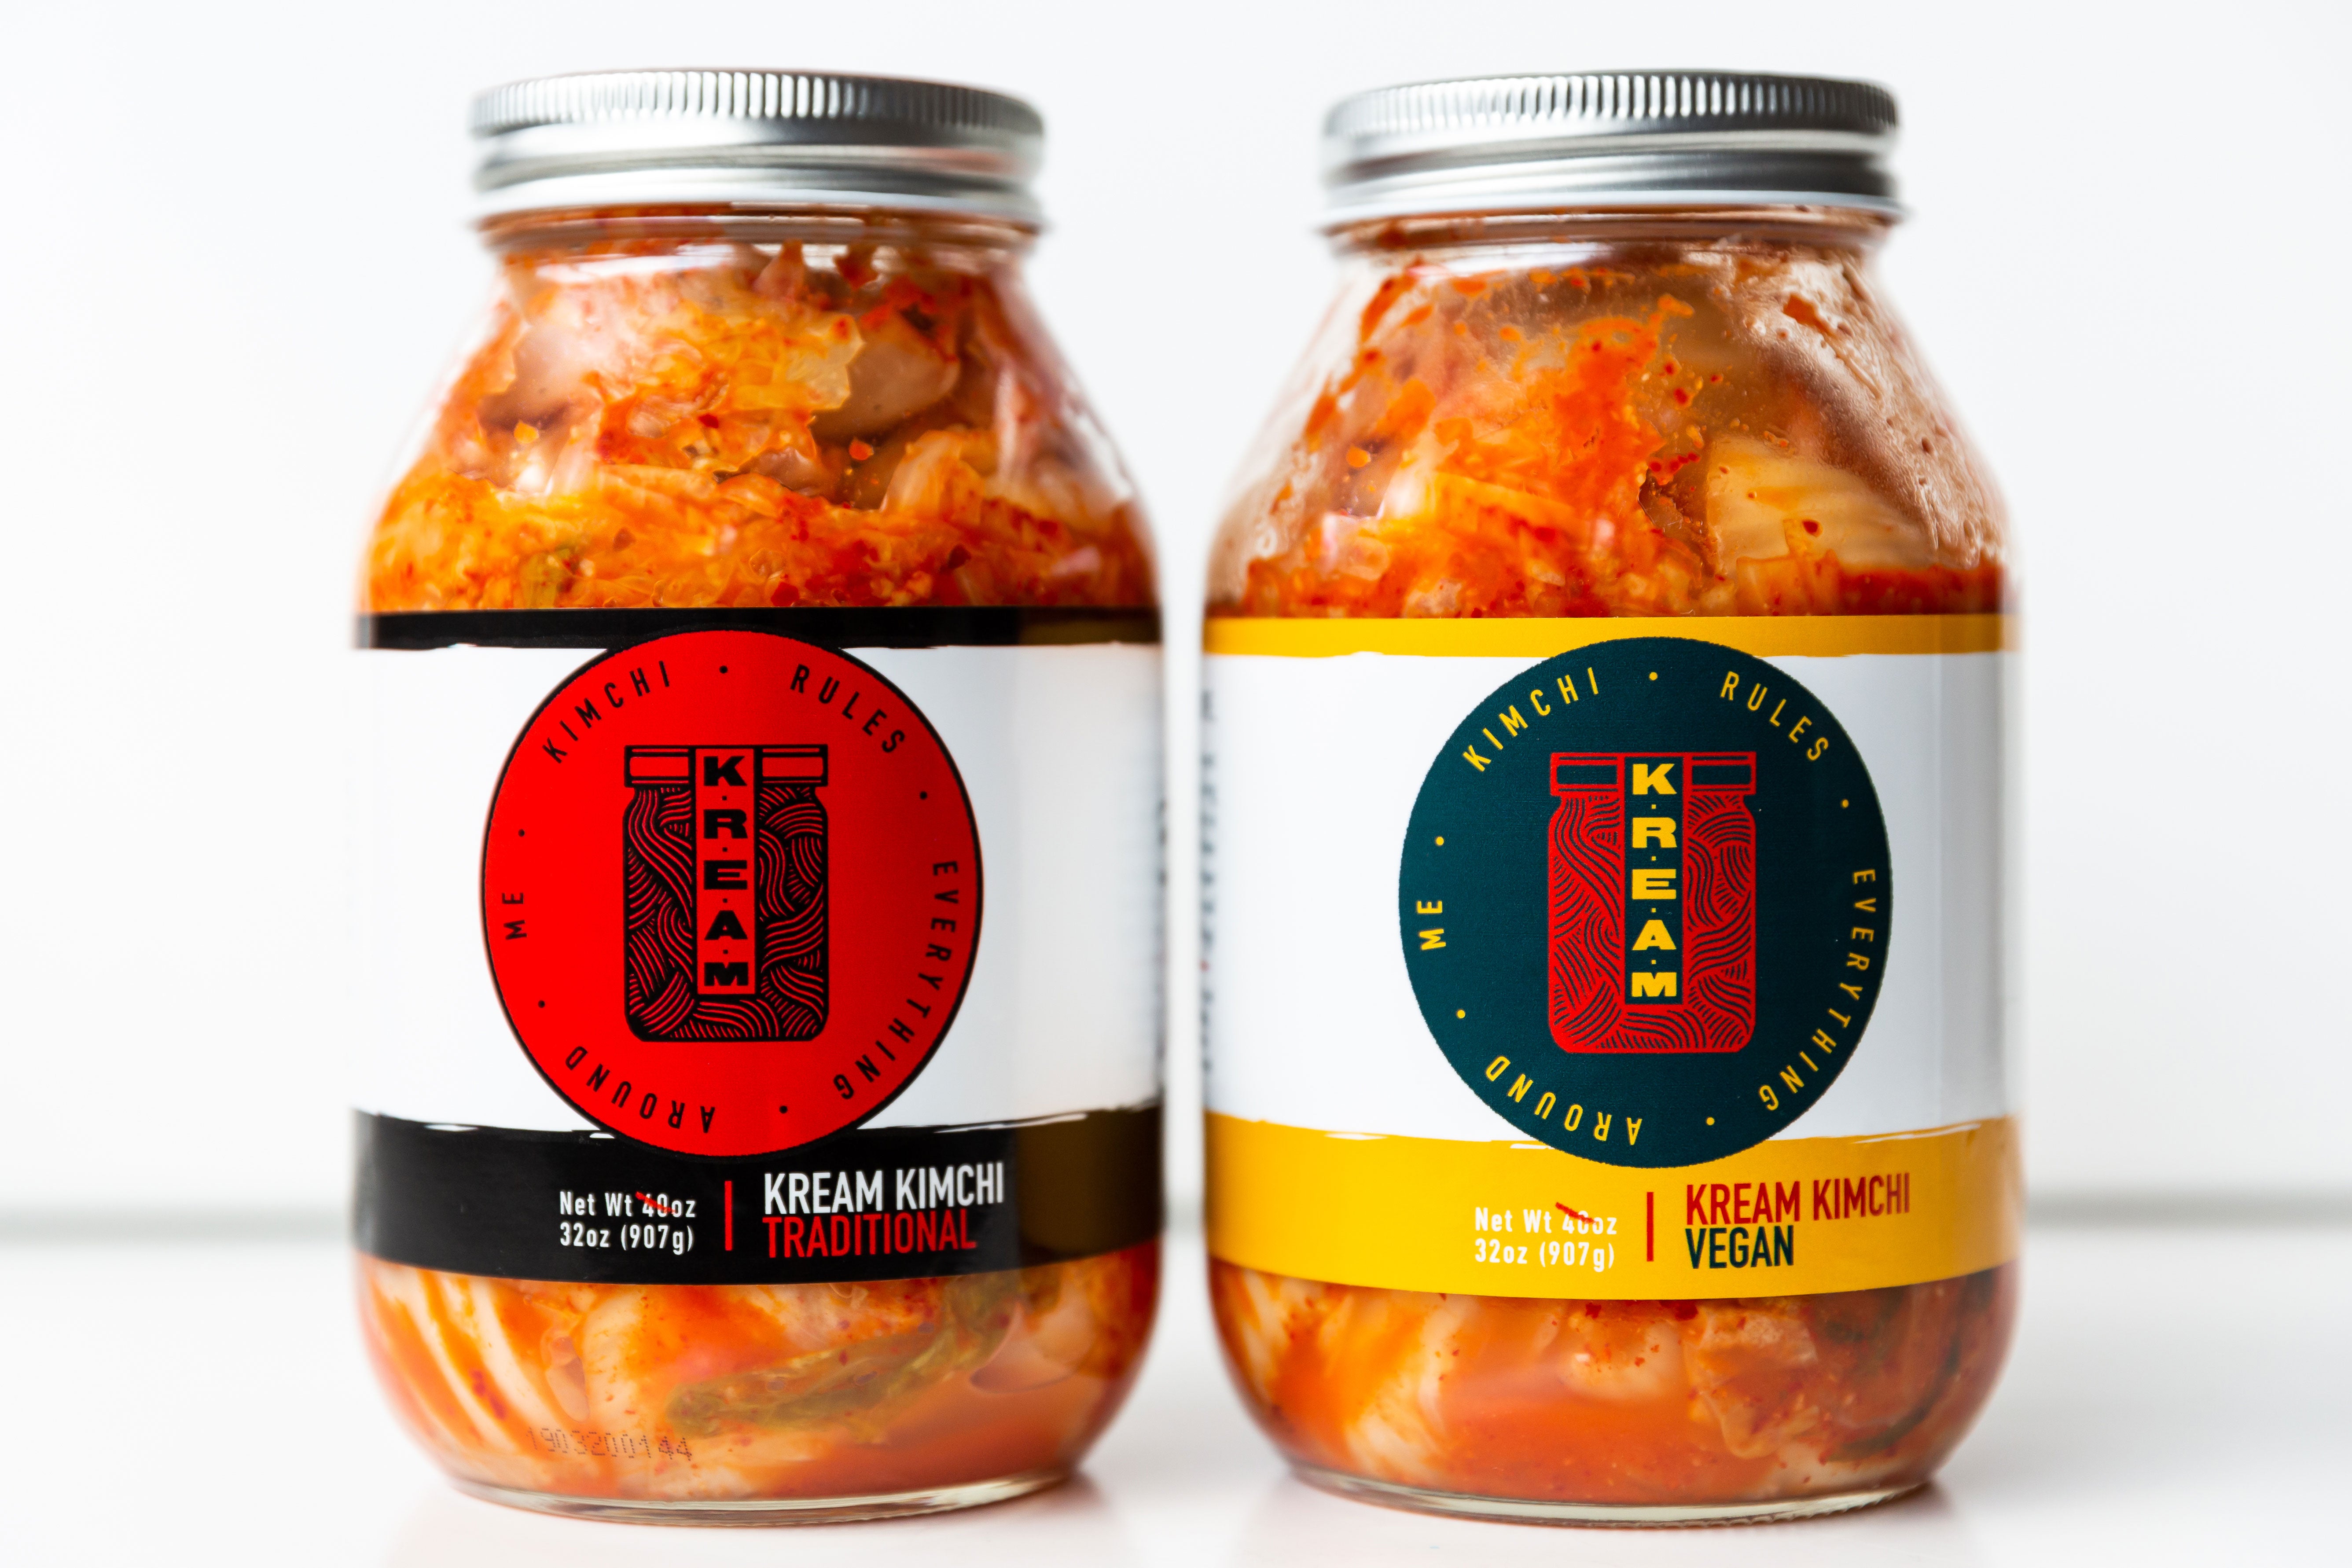 ..Kimchi (Traditional or Vegan)